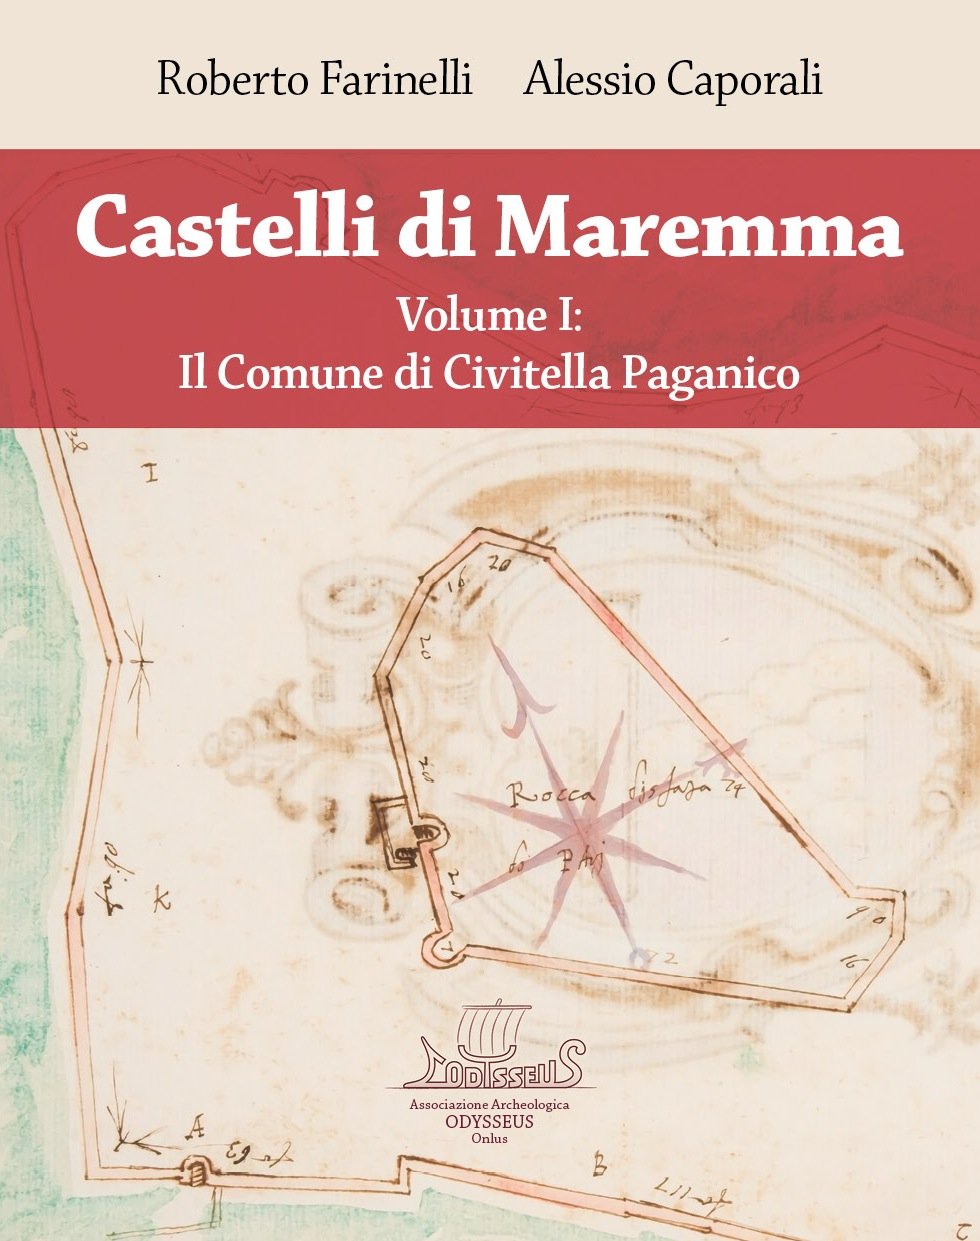 Copertina del libro "Castelli di Maremma - Volume I: Il Comune di Civitella Paganico"